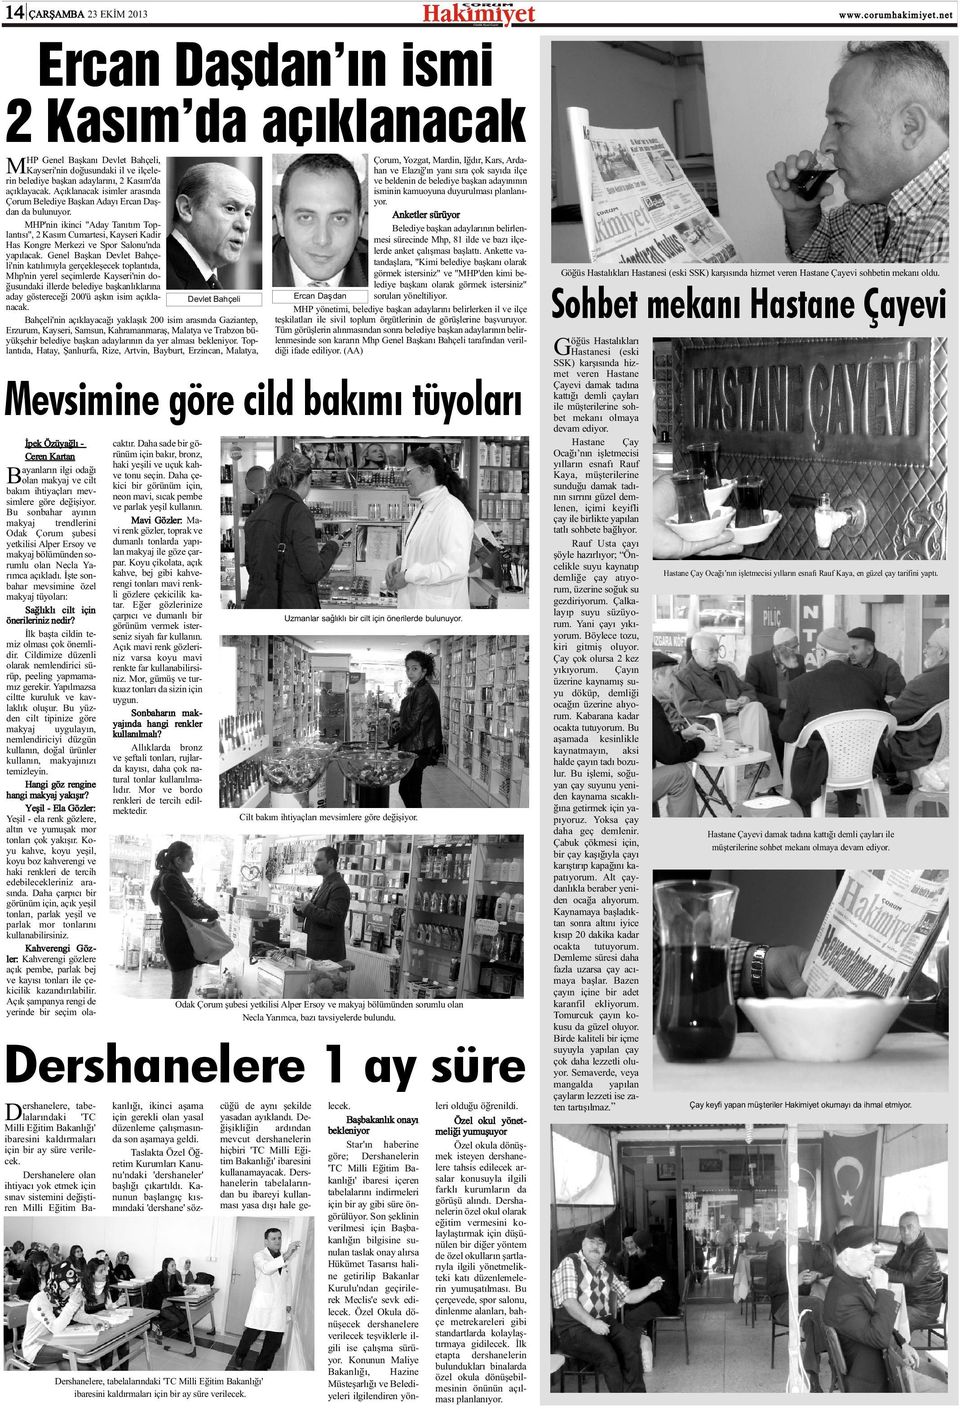 MHP'nin ikinci "Aday Tanýtým Toplantýsý", 2 Kasým Cumartesi, Kayseri Kadir Has Kongre Merkezi ve Spor Salonu'nda yapýlacak.